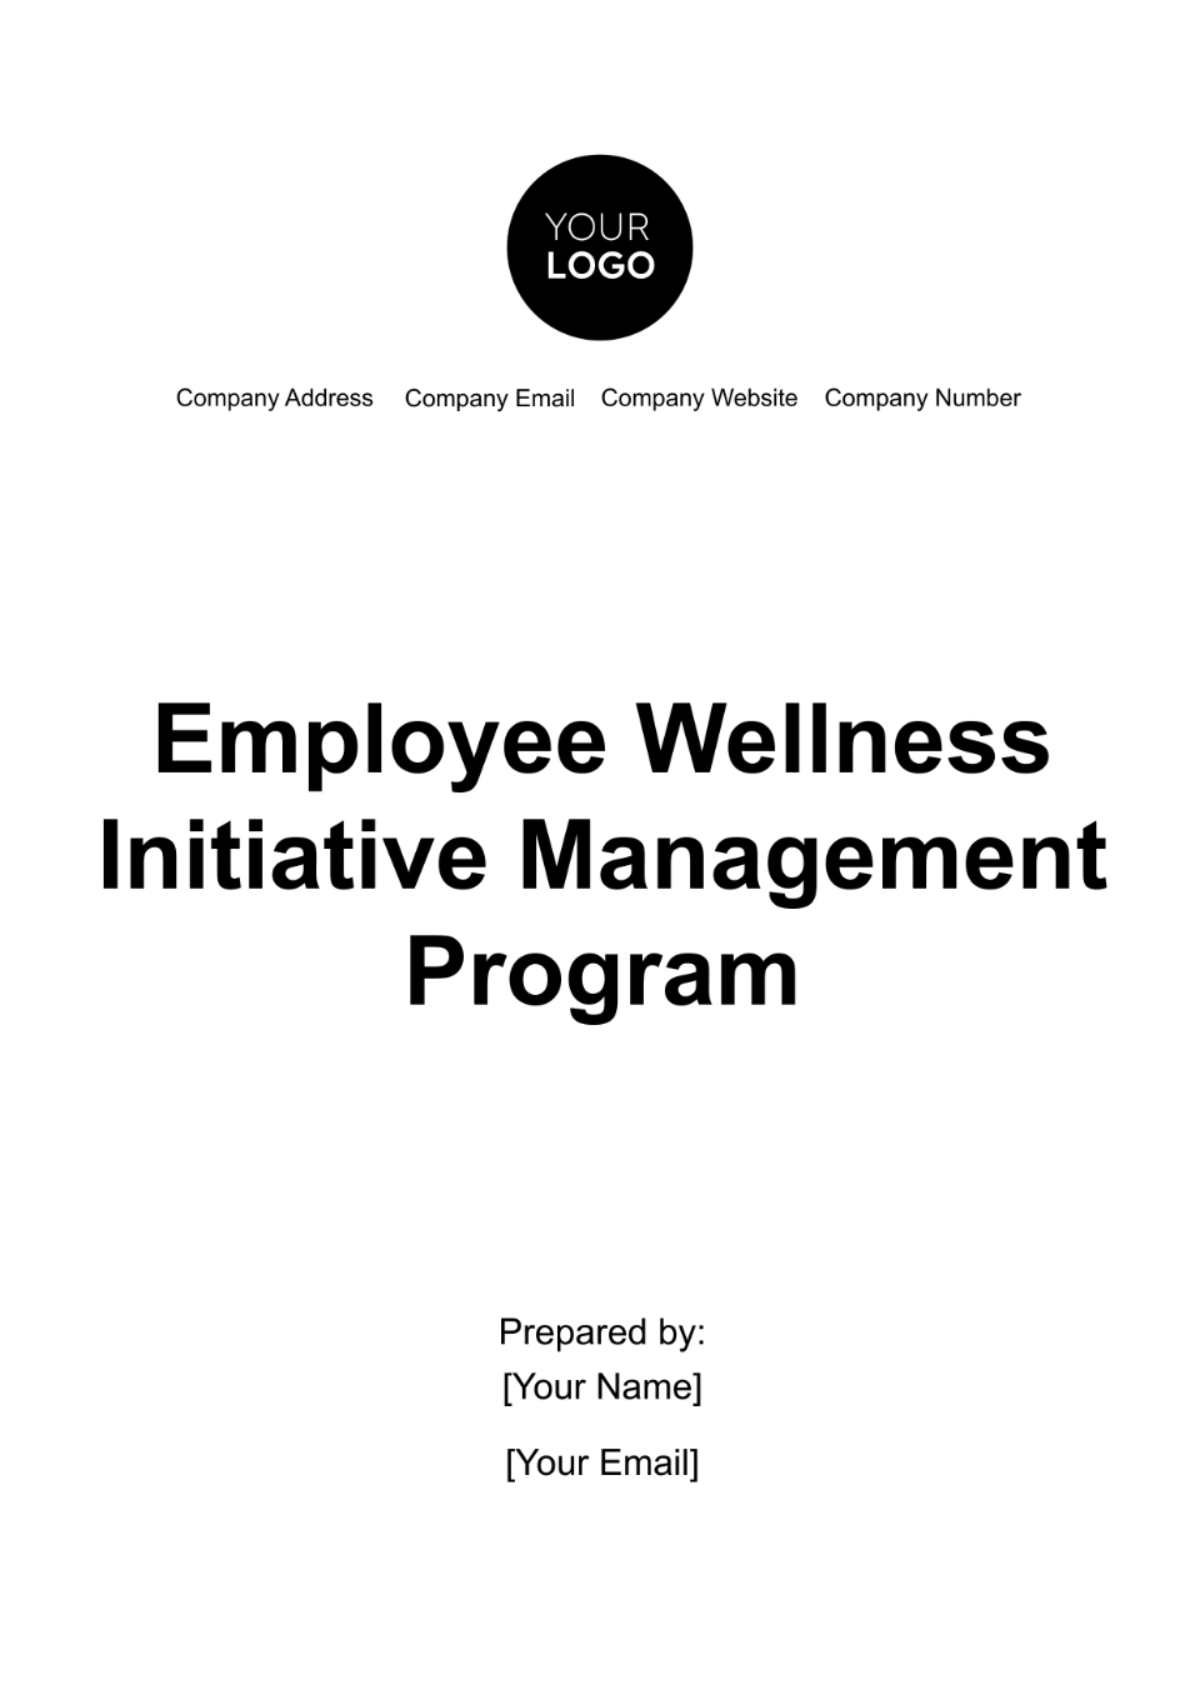 Employee Wellness Initiative Management Journal Template